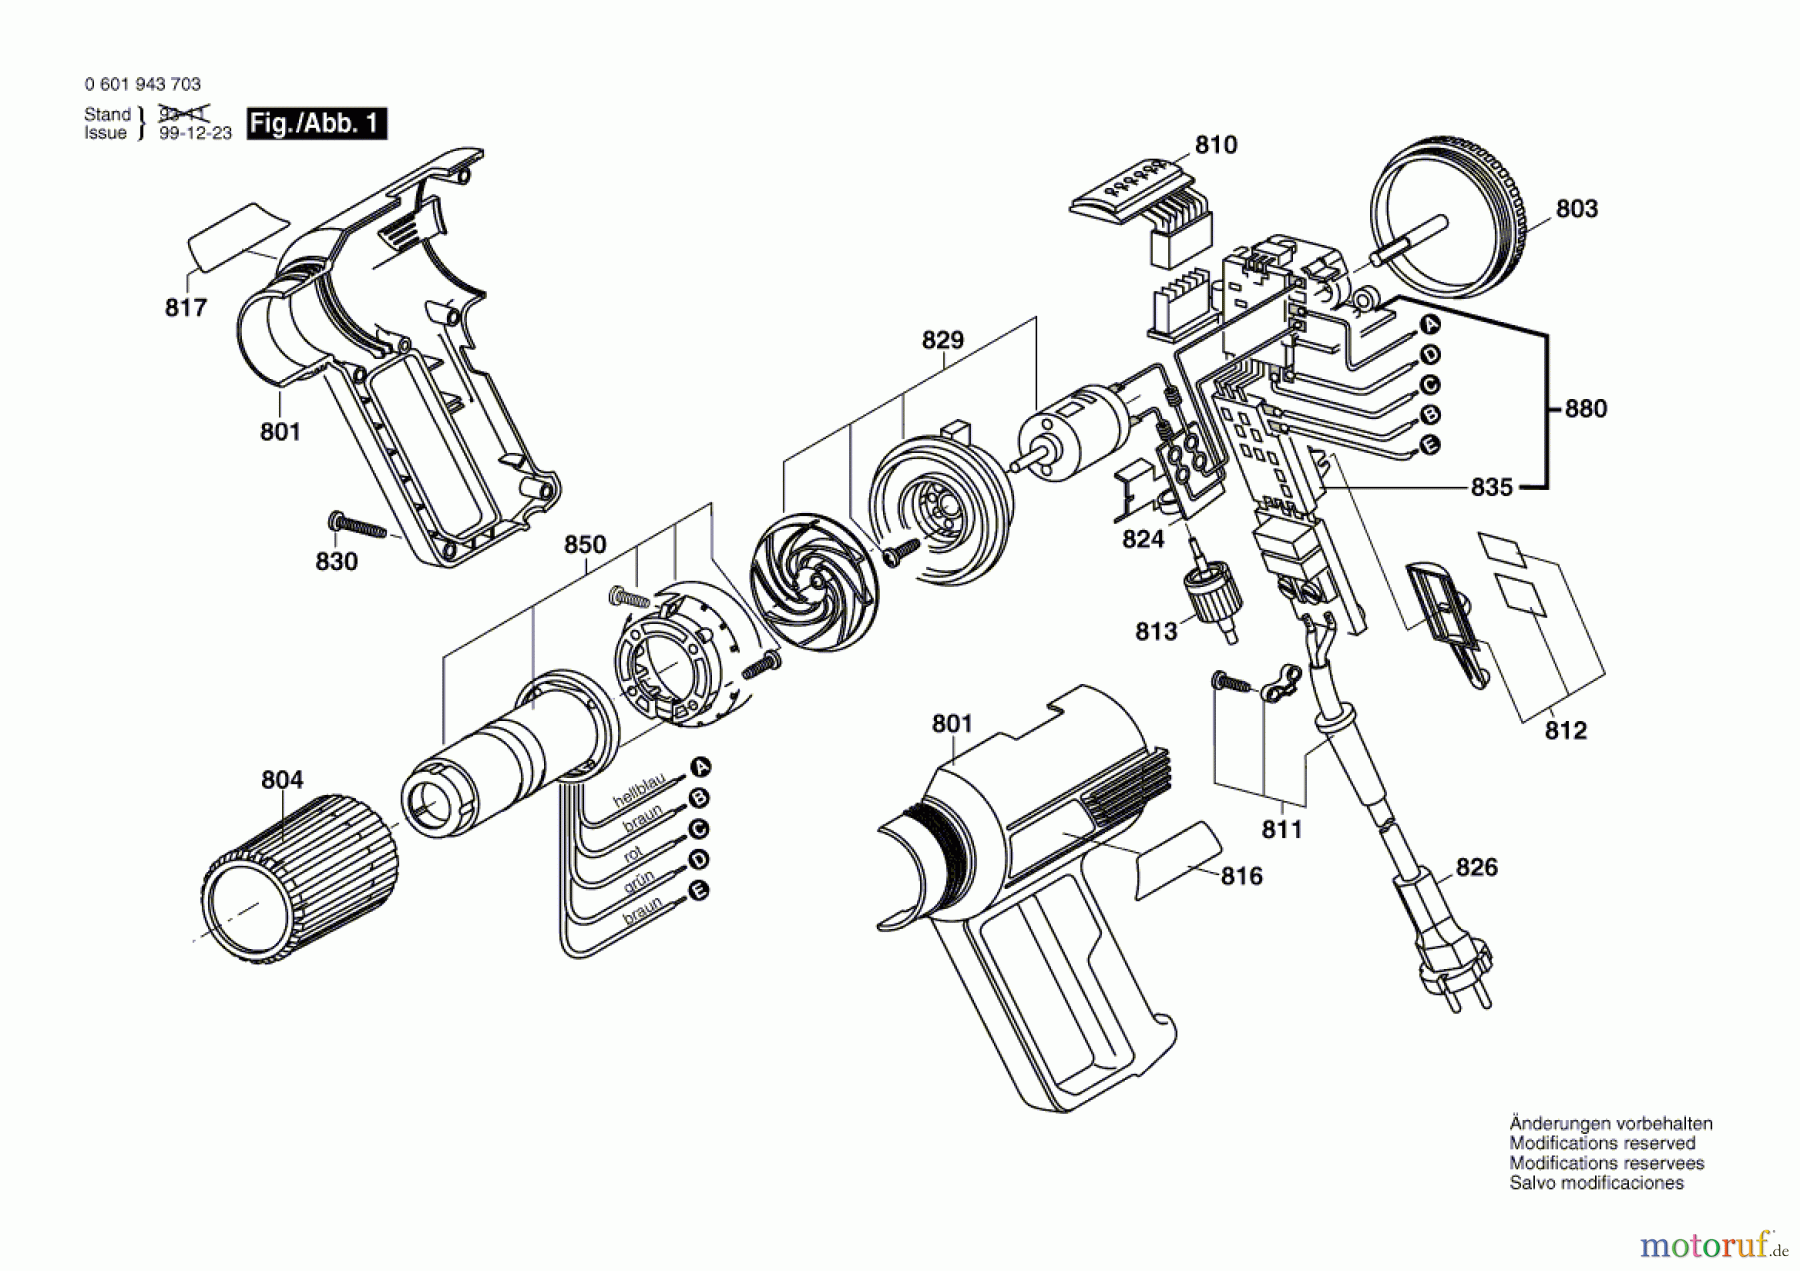  Bosch Werkzeug Heissluftgebläse GHG 650 LCE Seite 1